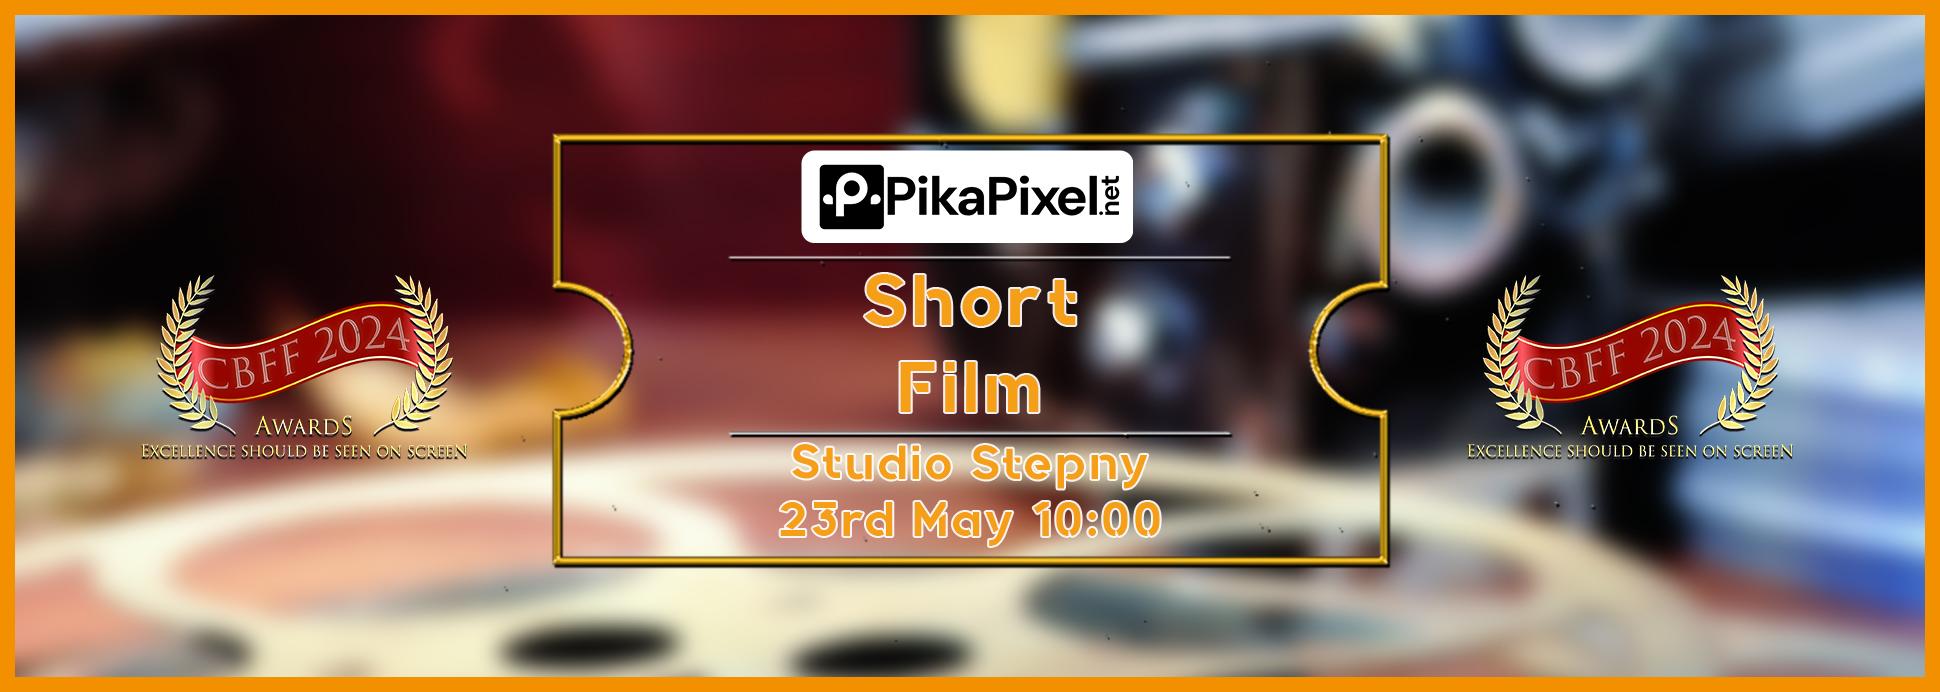 Thursday 23rd 10:00 Study Stepny Short Film